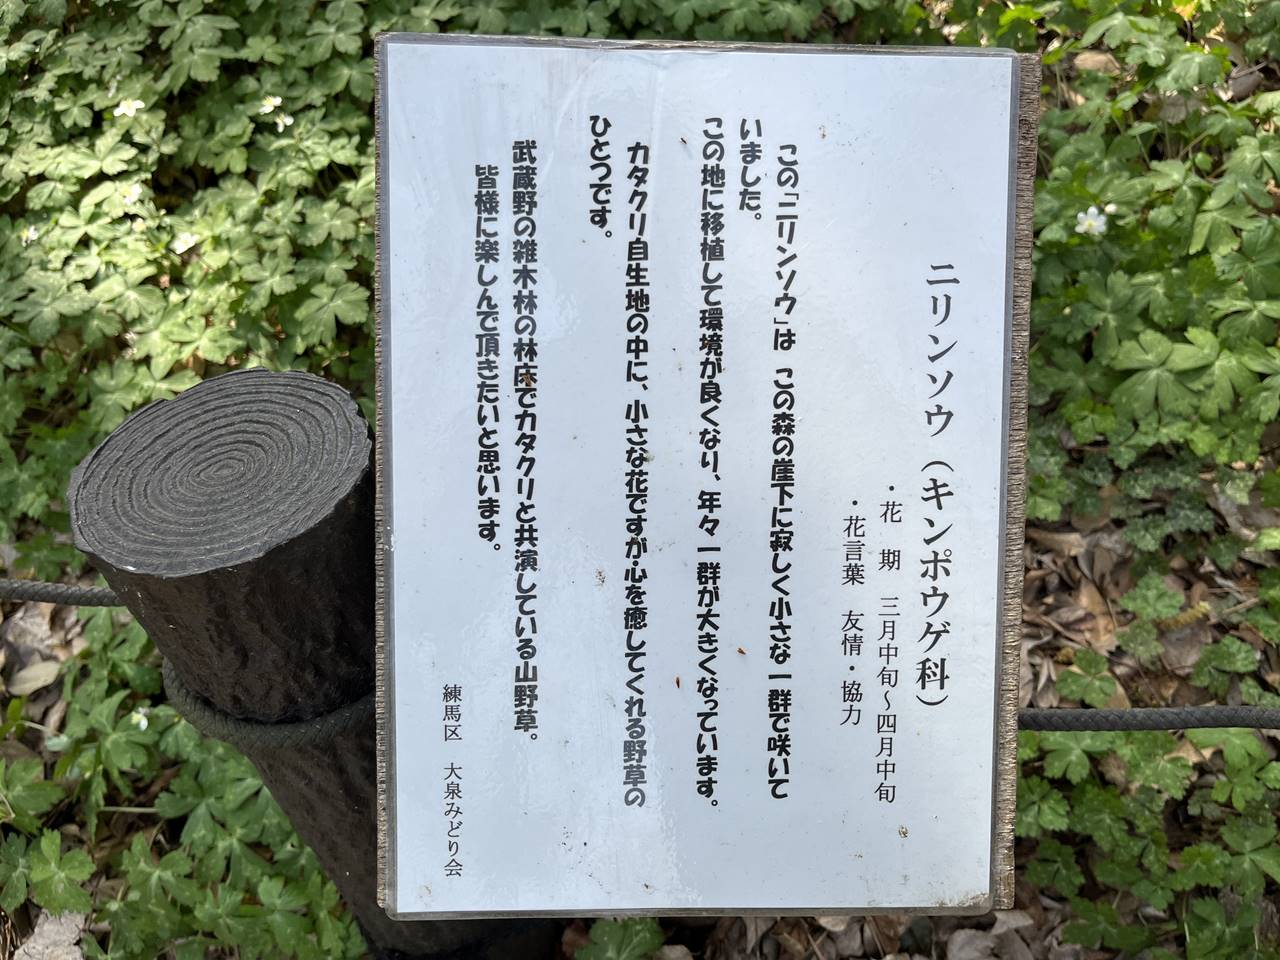 【練馬】清水山の森 カタクリ 東京23区唯一の大規模群生地